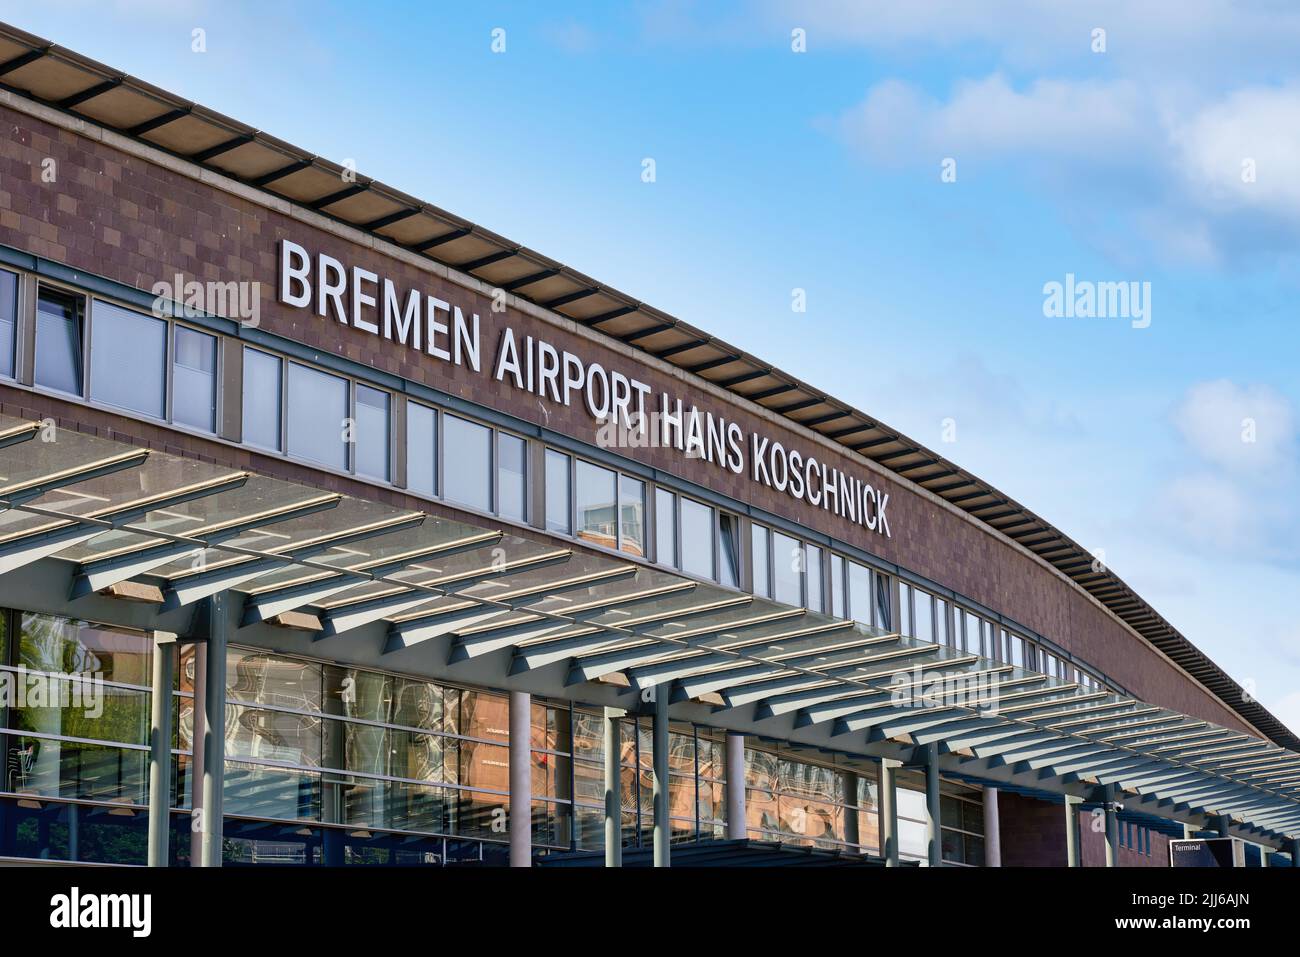 Aeroporto di Brema. Aeroporto internazionale della città e stato di Brema nella Germania settentrionale. Foto Stock